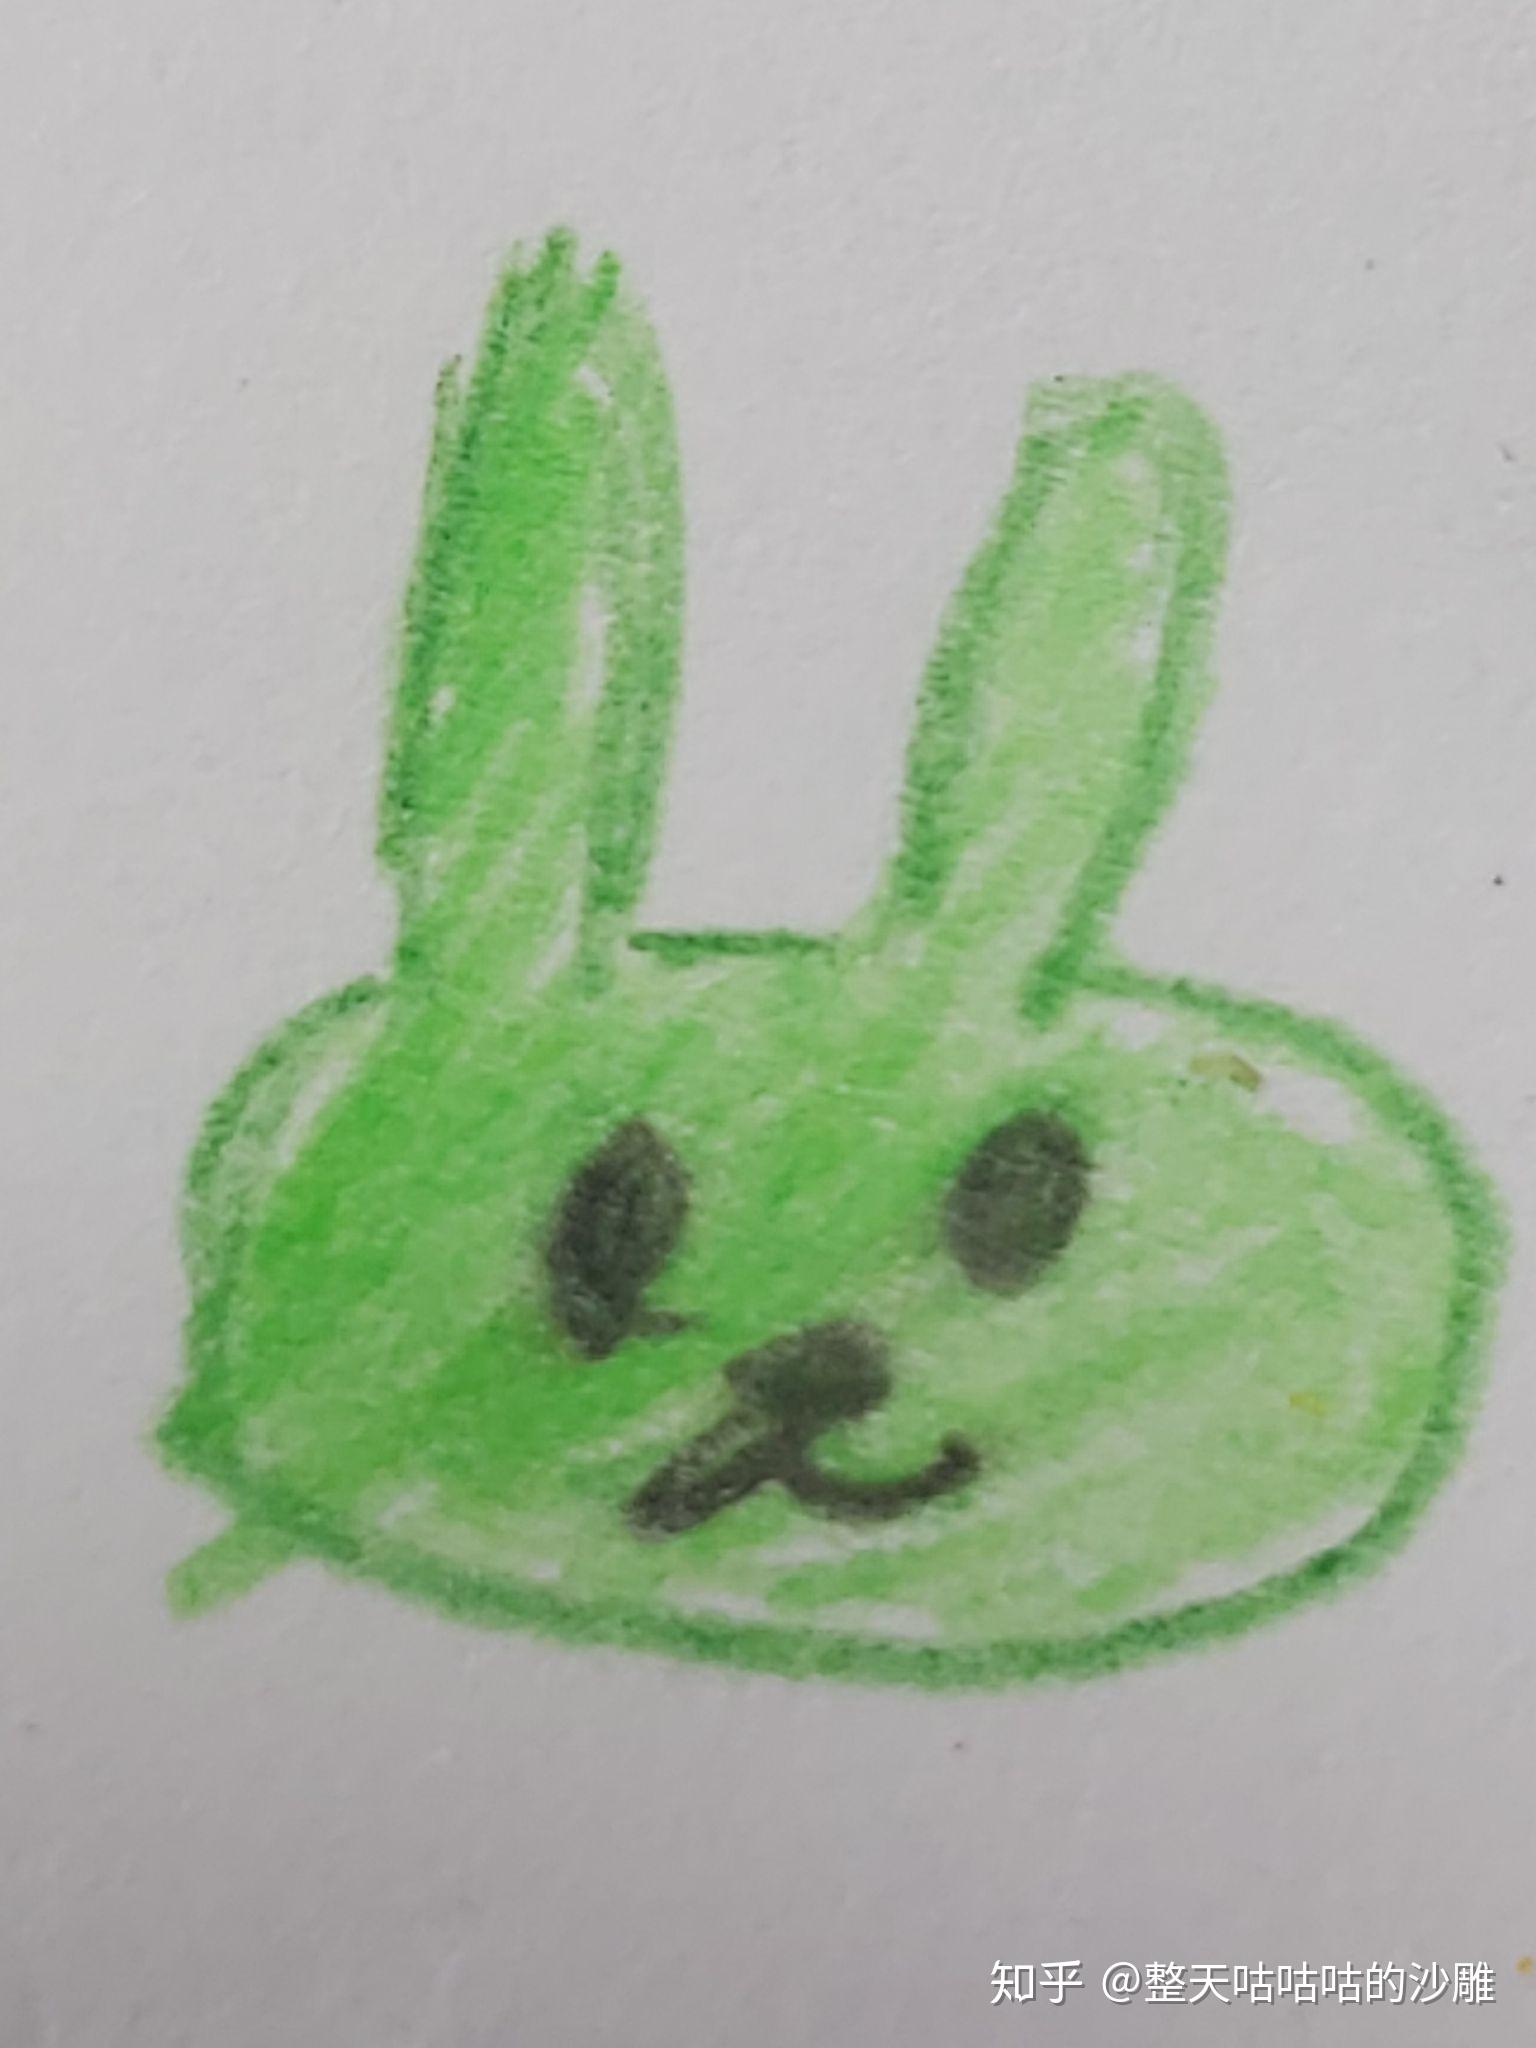 撒野绿色兔子图片图片